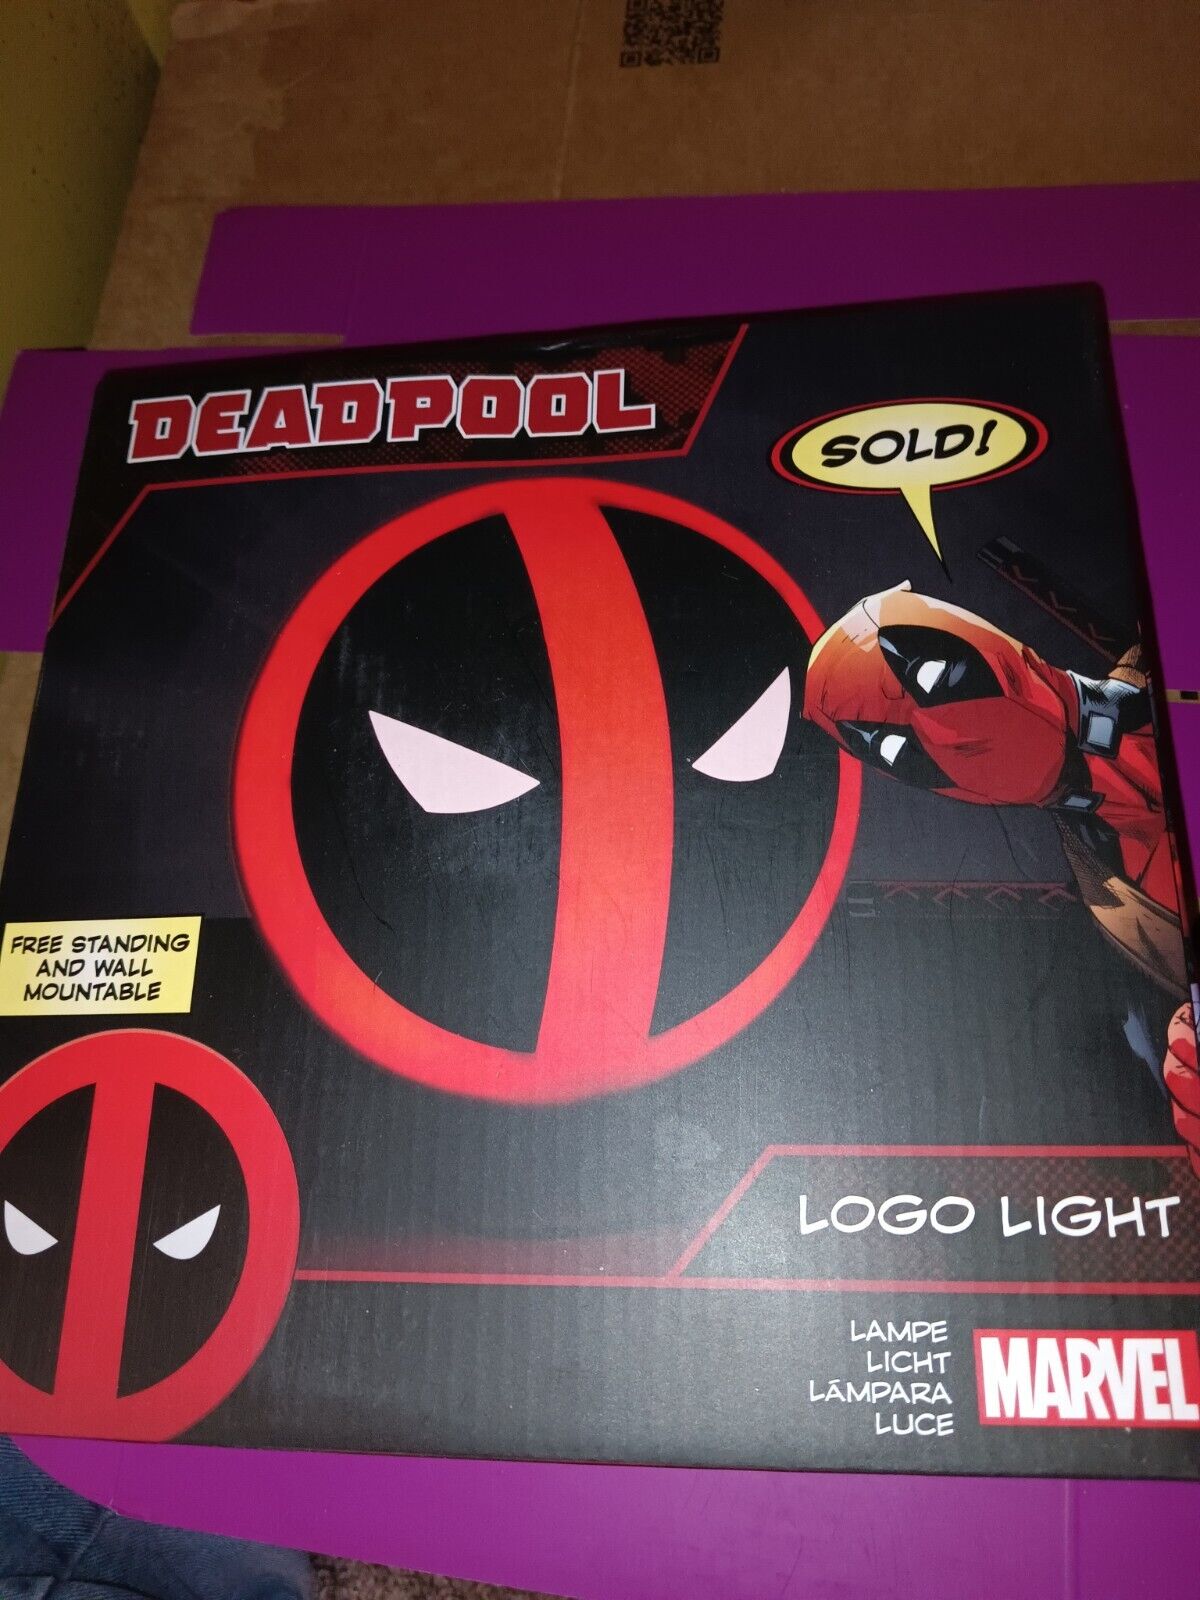 Marvel Deadpool Logo Light/Freestanding & Wall Mountable-Brand New